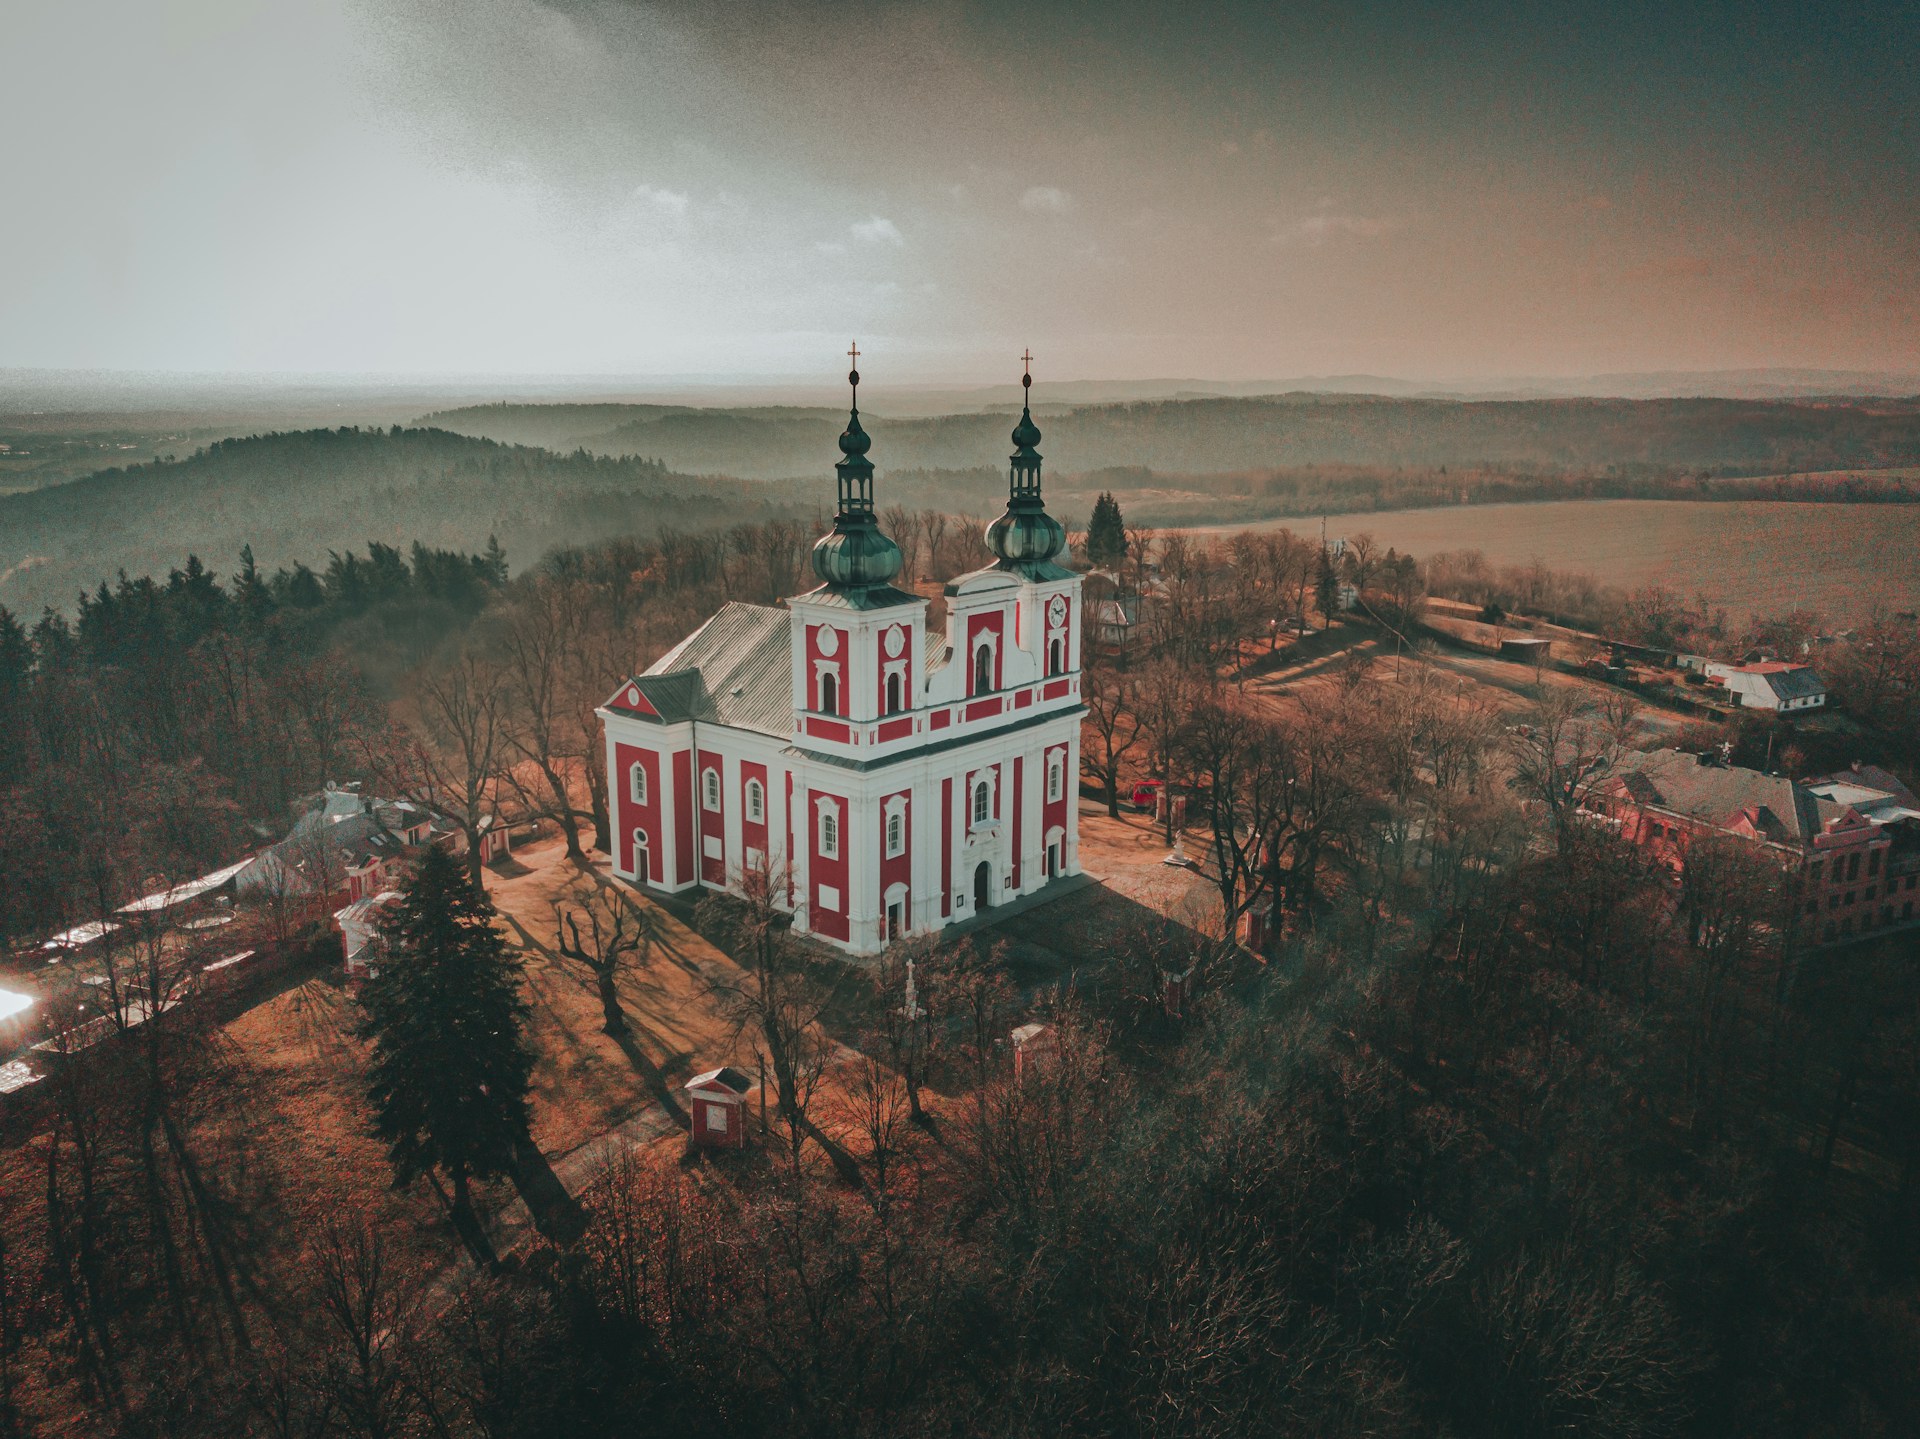 A church in the Czech Republic